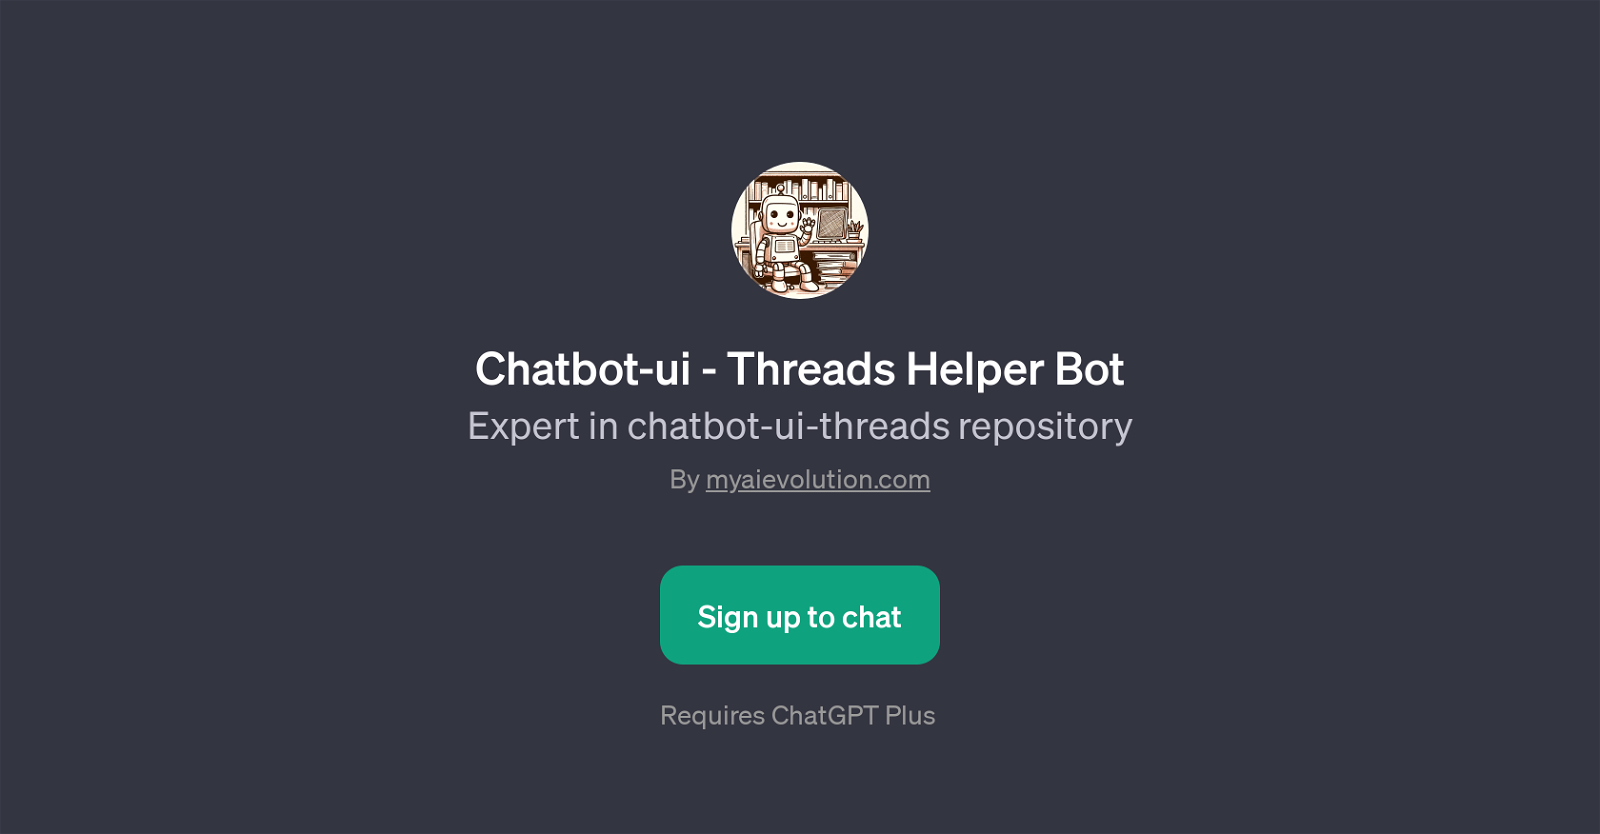 Chatbot-ui - Threads Helper Bot website